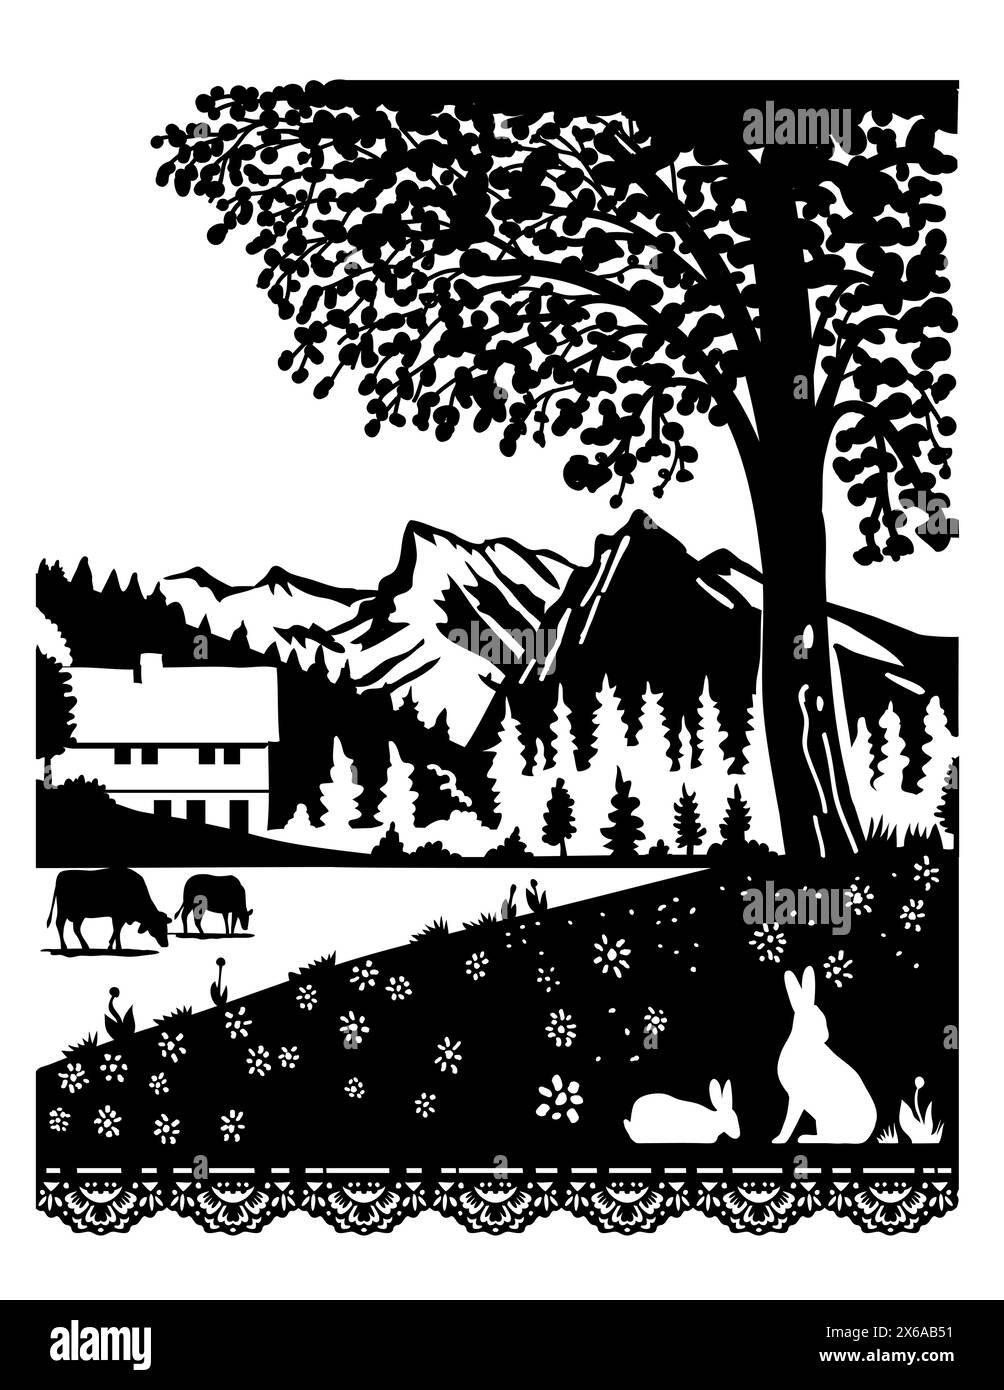 Scherenschnitte svizzero o forbici tagliate illustrazione di una figura di una mucca e di un coniglio in un villaggio nel Parco naturale Diemtigtal a Berna, Svizzera. Illustrazione Vettoriale